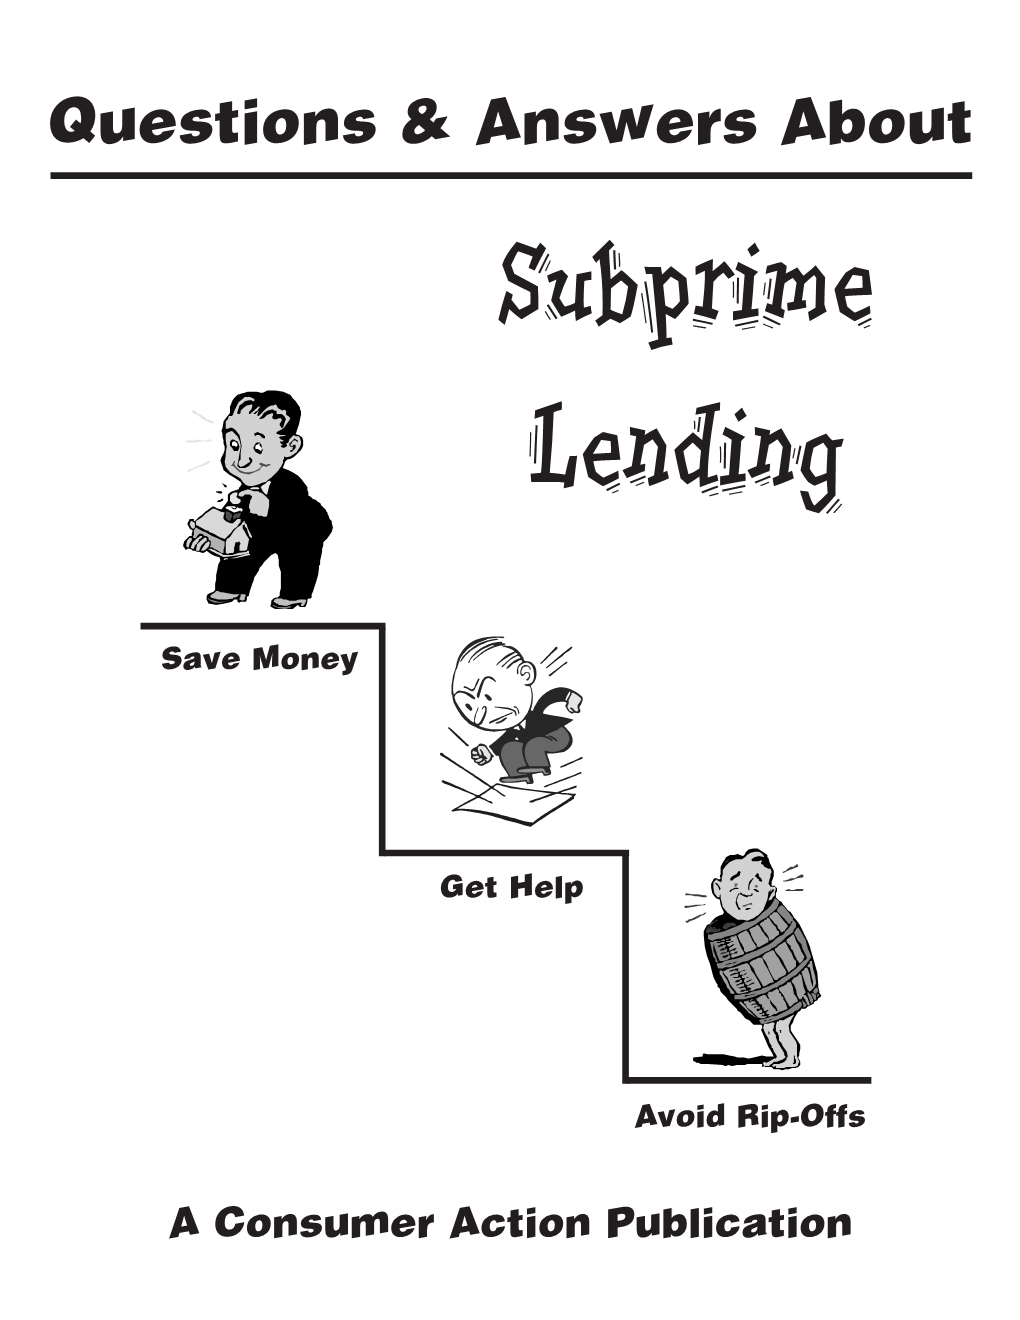 Questions & Answers About Subprime Lending